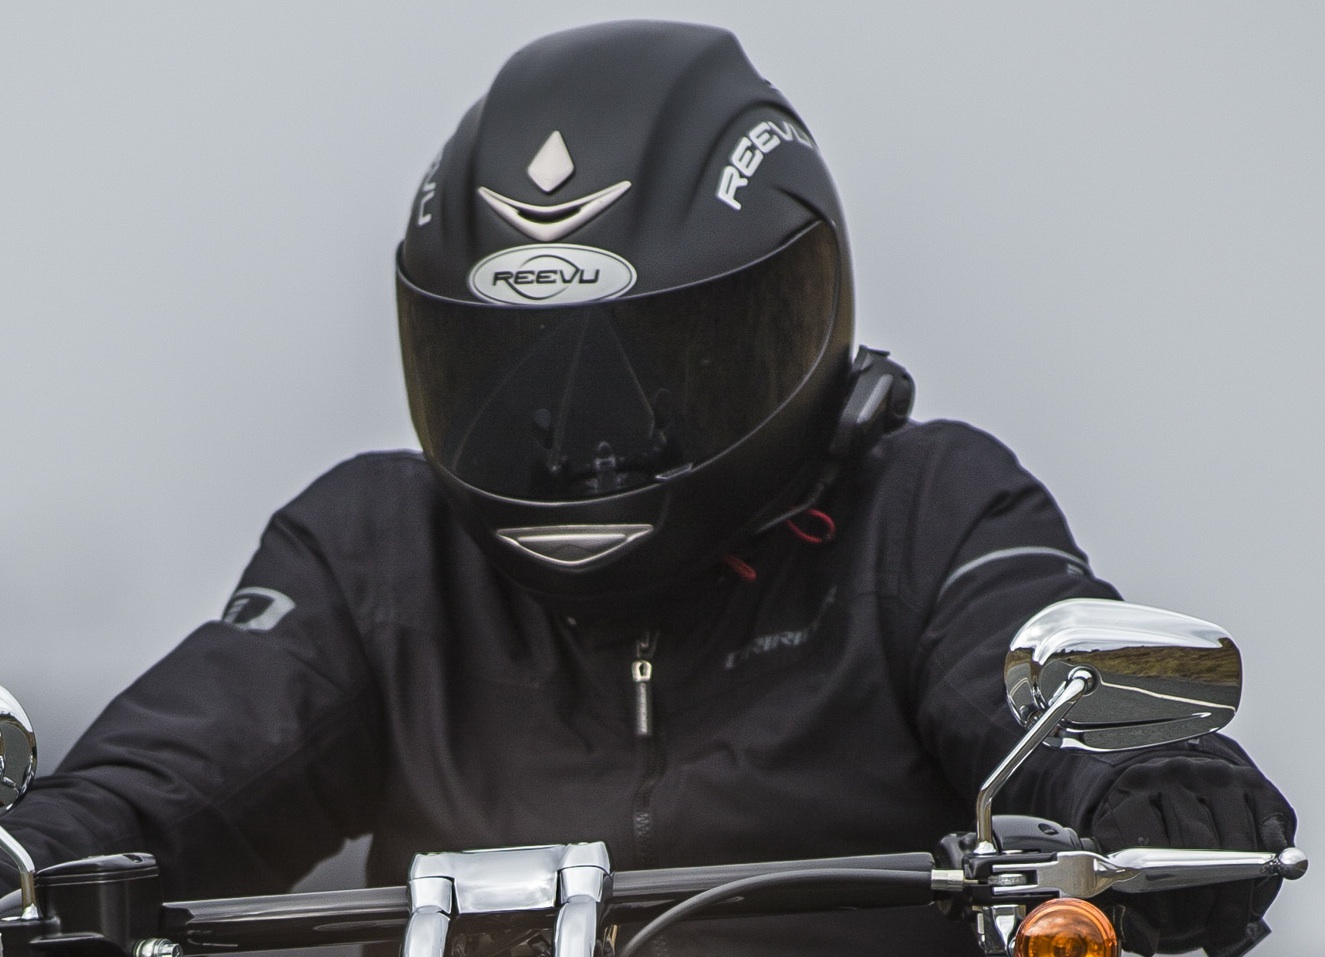 Reevu motorcycle helmet